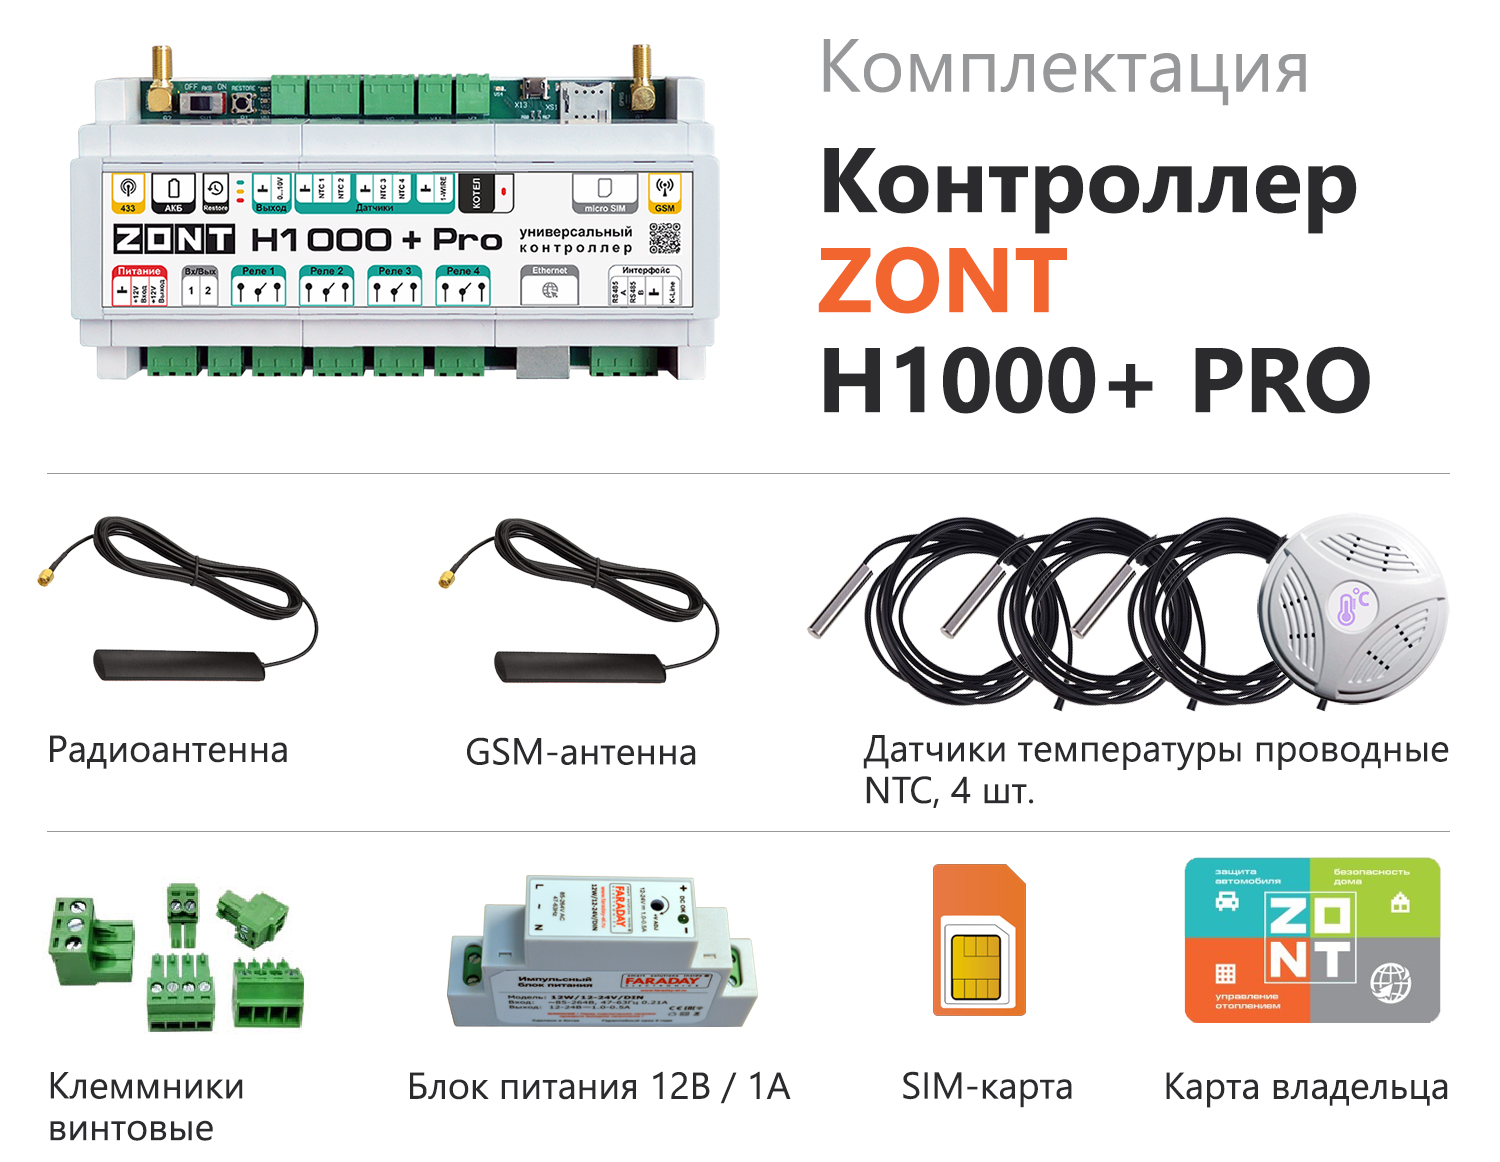 Детальное изображение товара "Универсальный GSM/Wi-Fi/Etherrnet контроллер ZONT H1000+ Pro" из каталога оборудования для видеонаблюдения